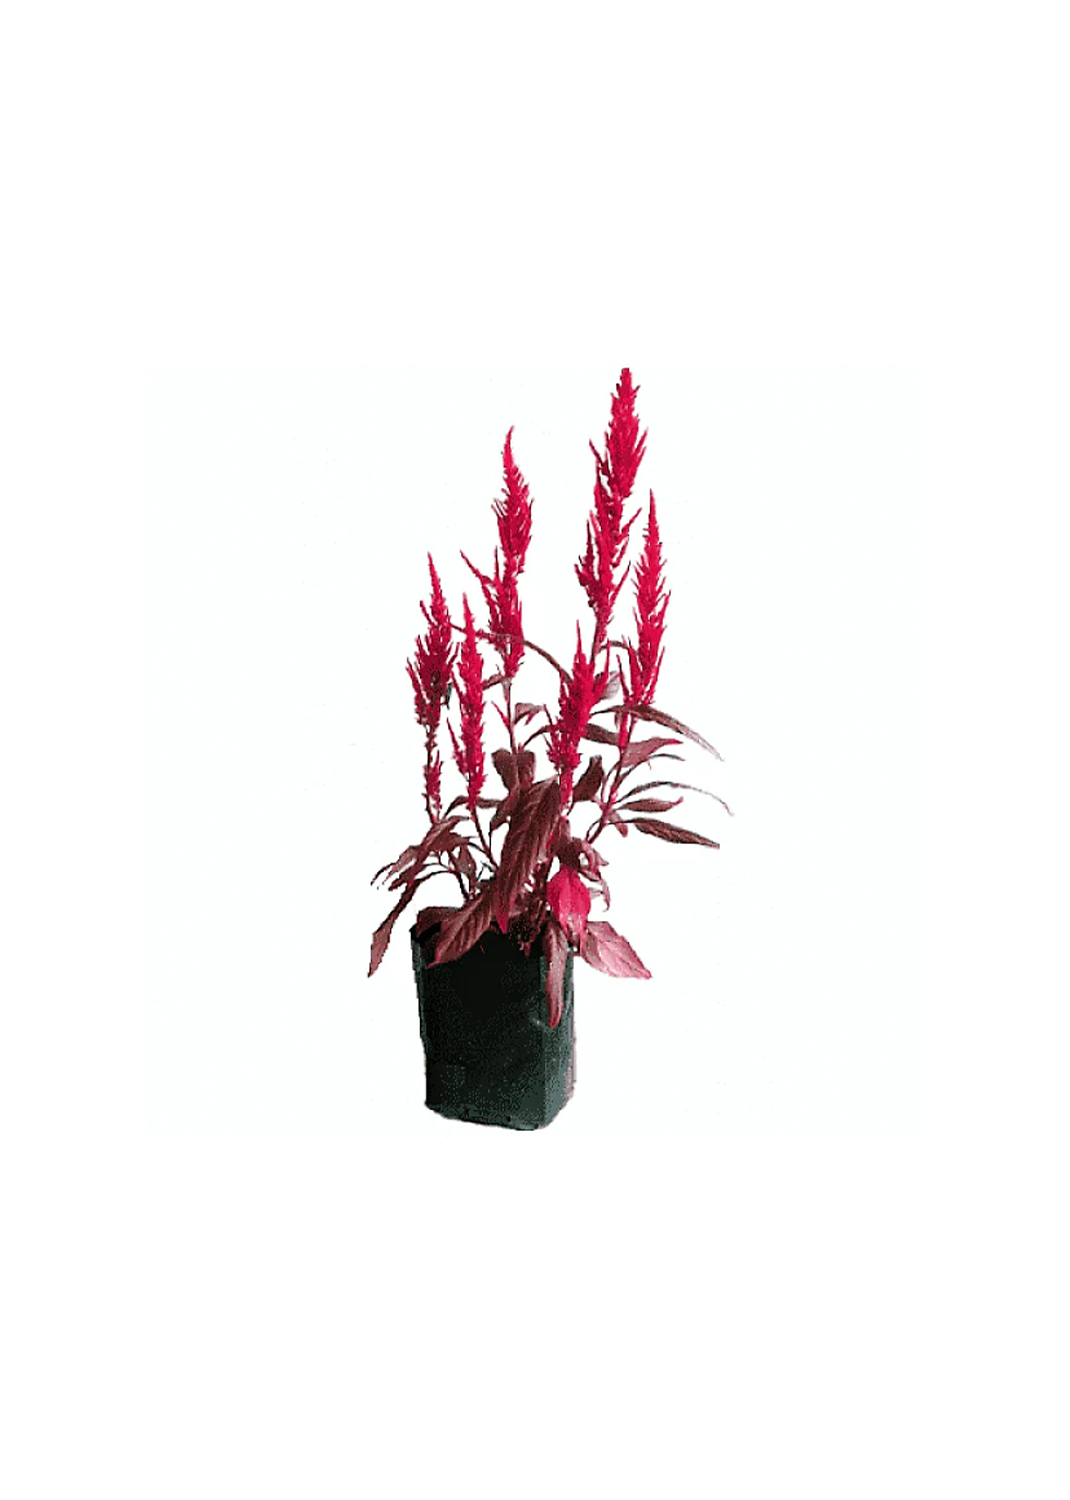 Red Amaranth, Amaranthus Cruentus